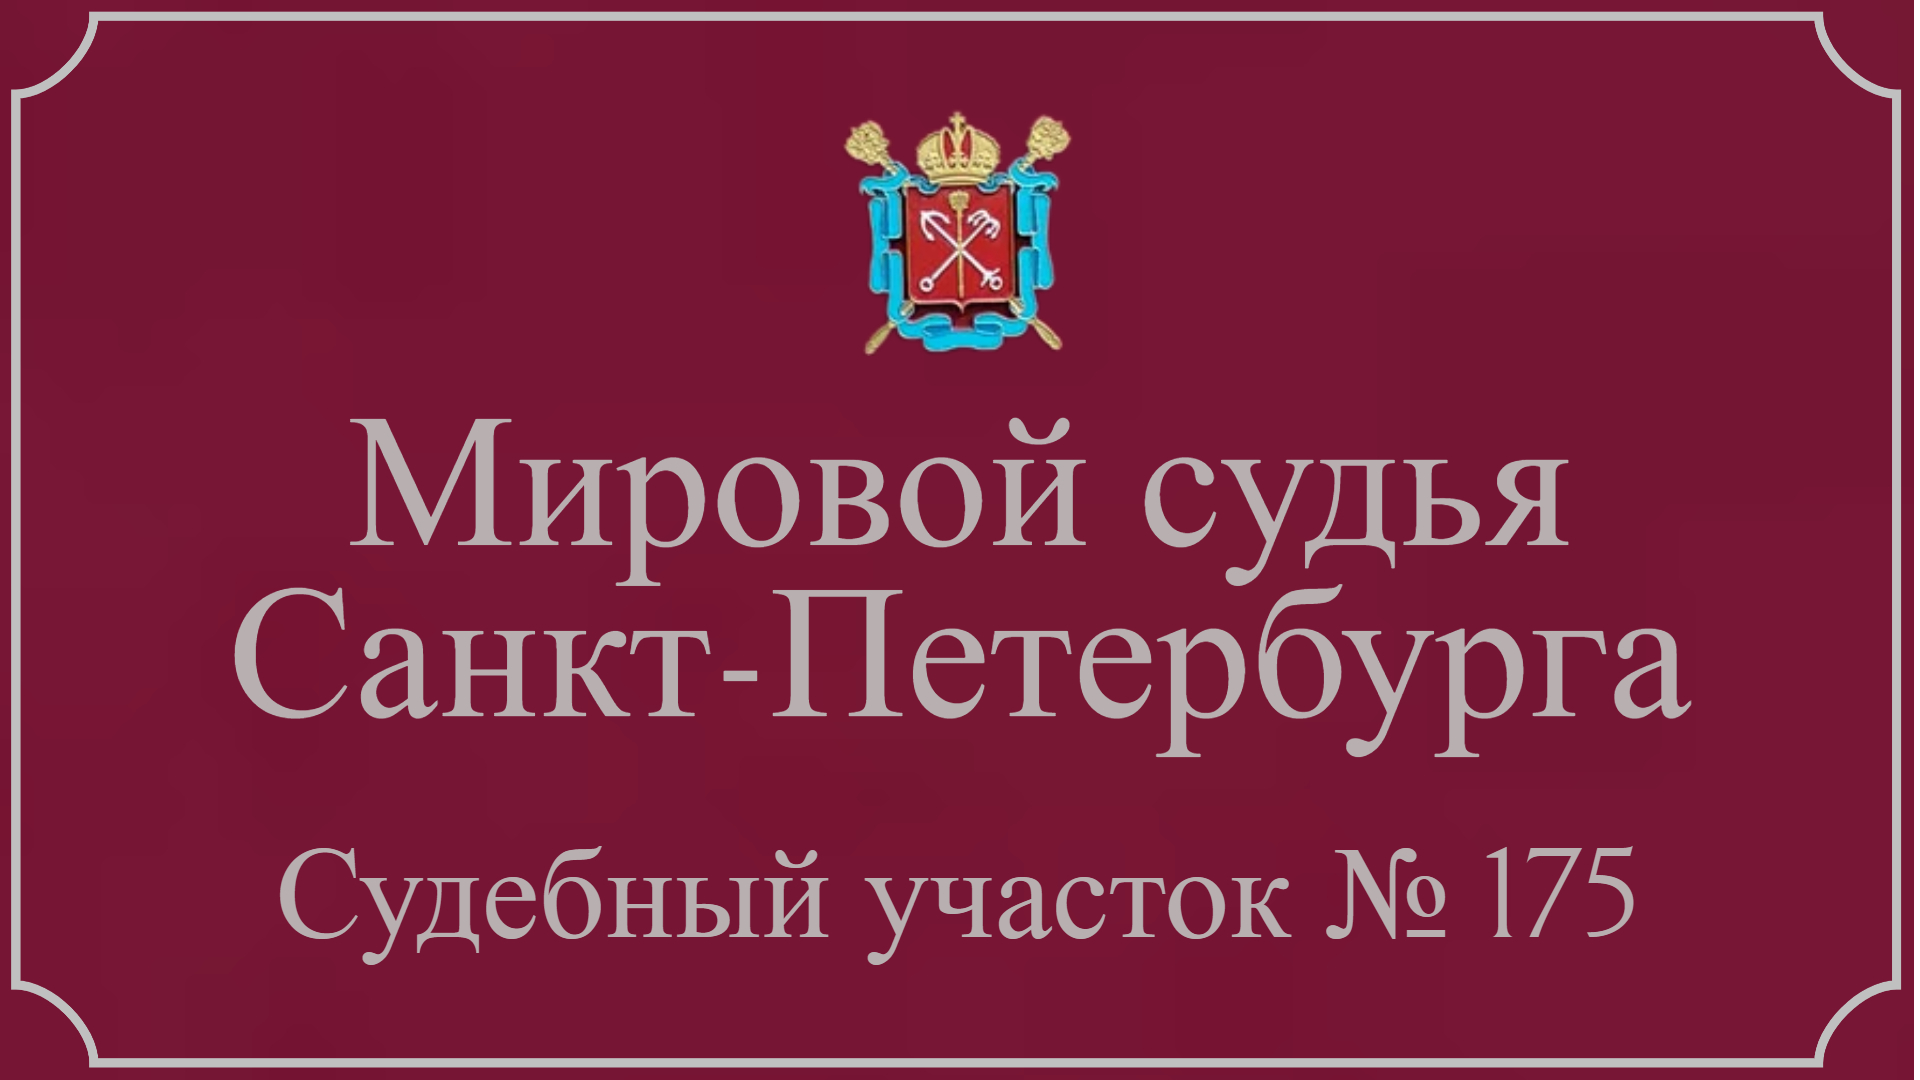 Информация по 175 судебному участку в Санкт-Петербурге.